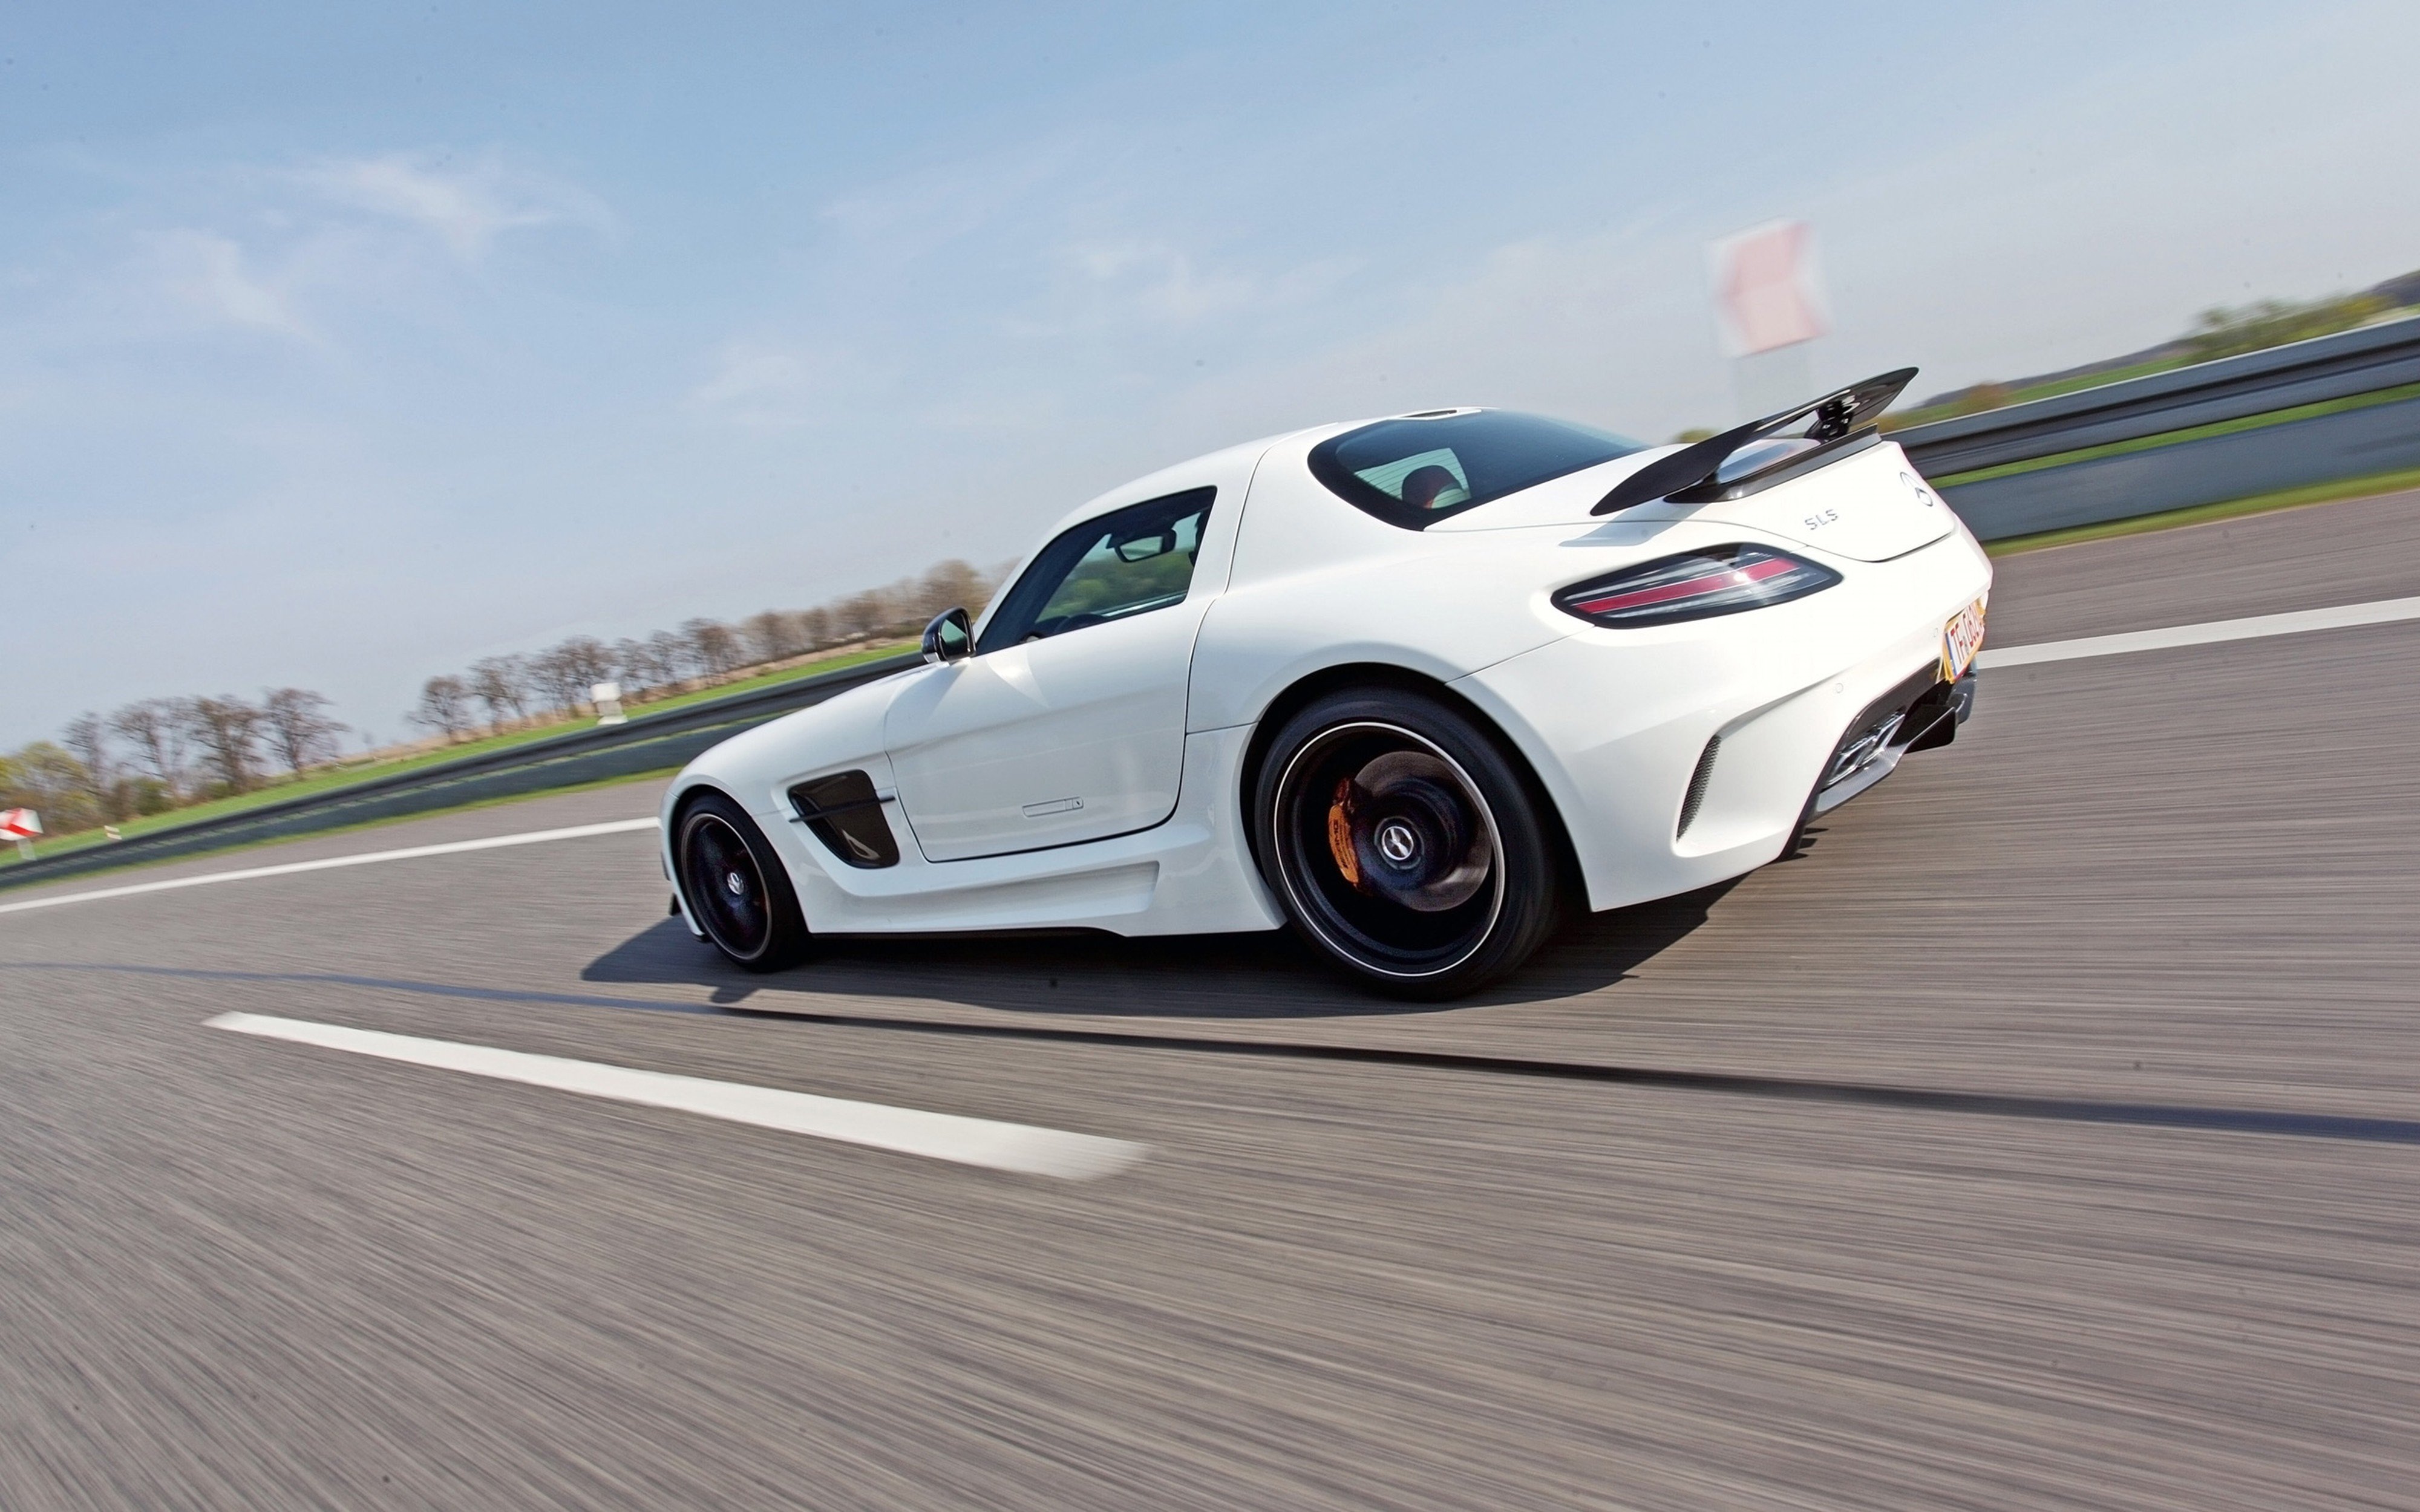 2014, Sga aerodynamics, Mercedes benz, Sls, Amg, Tunning, Supercar, Car, 4000x2500 Wallpaper